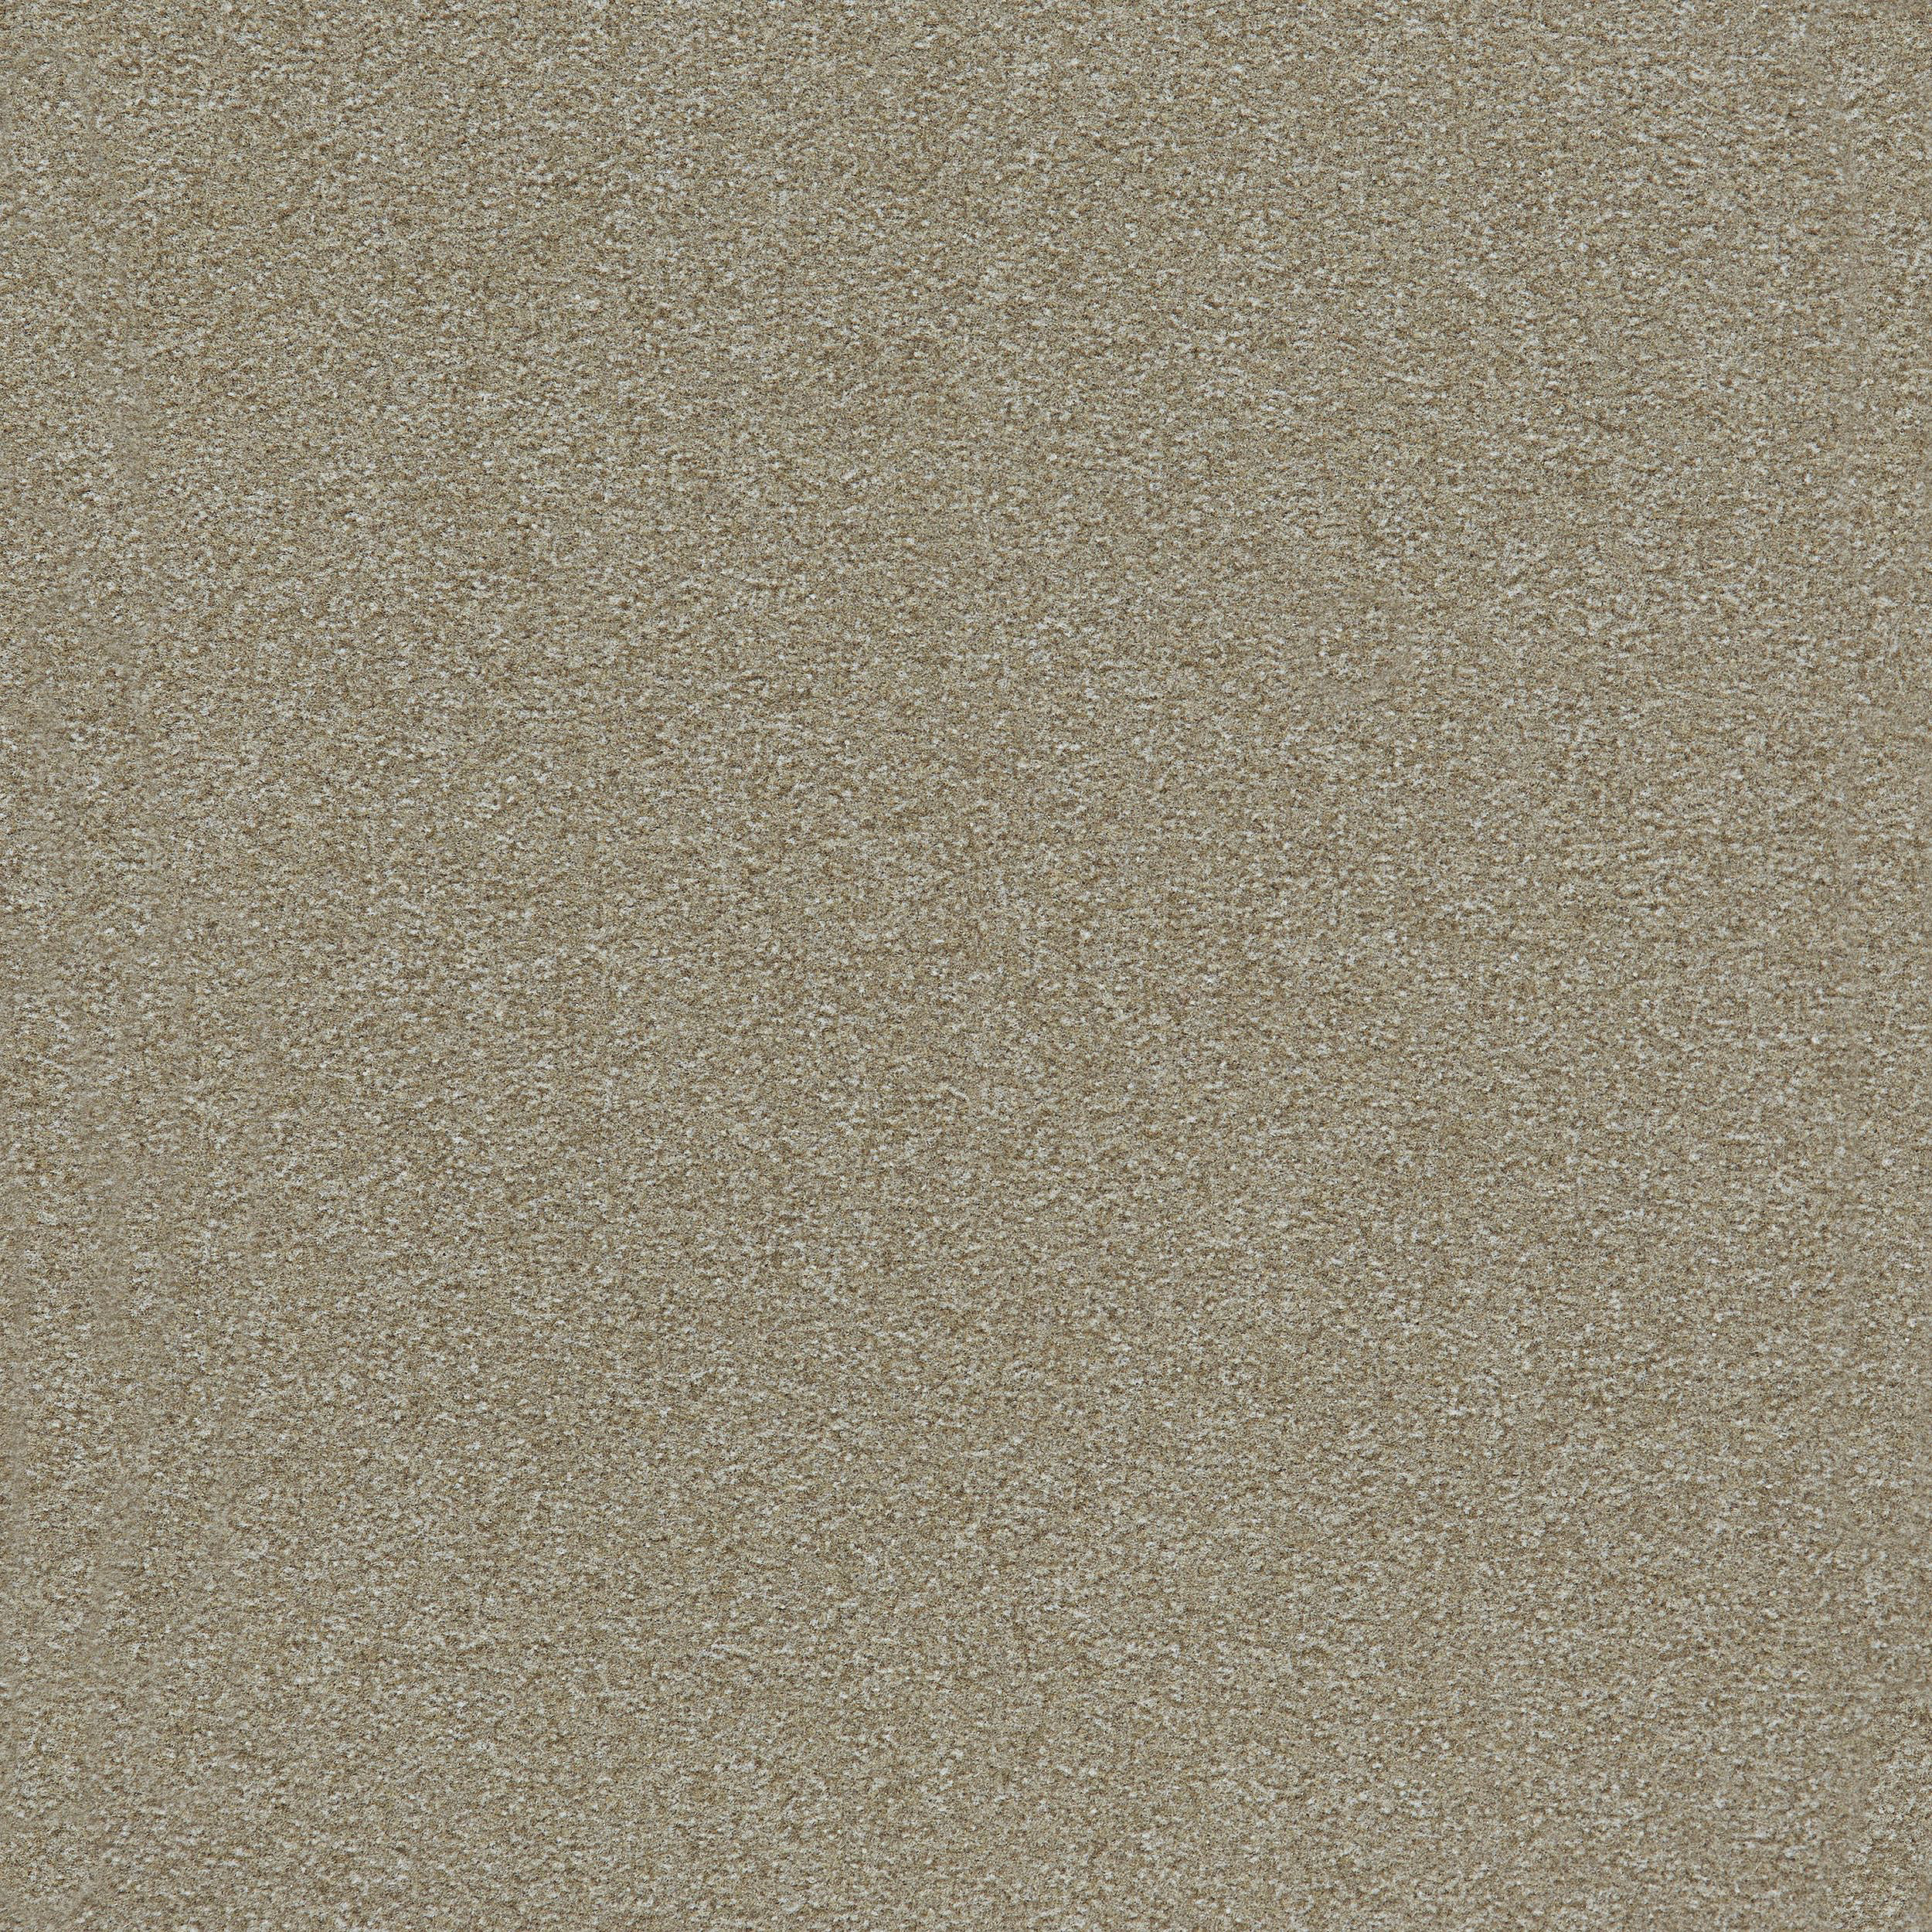 Heuga 725 Carpet Tile In Oyster Bildnummer 9